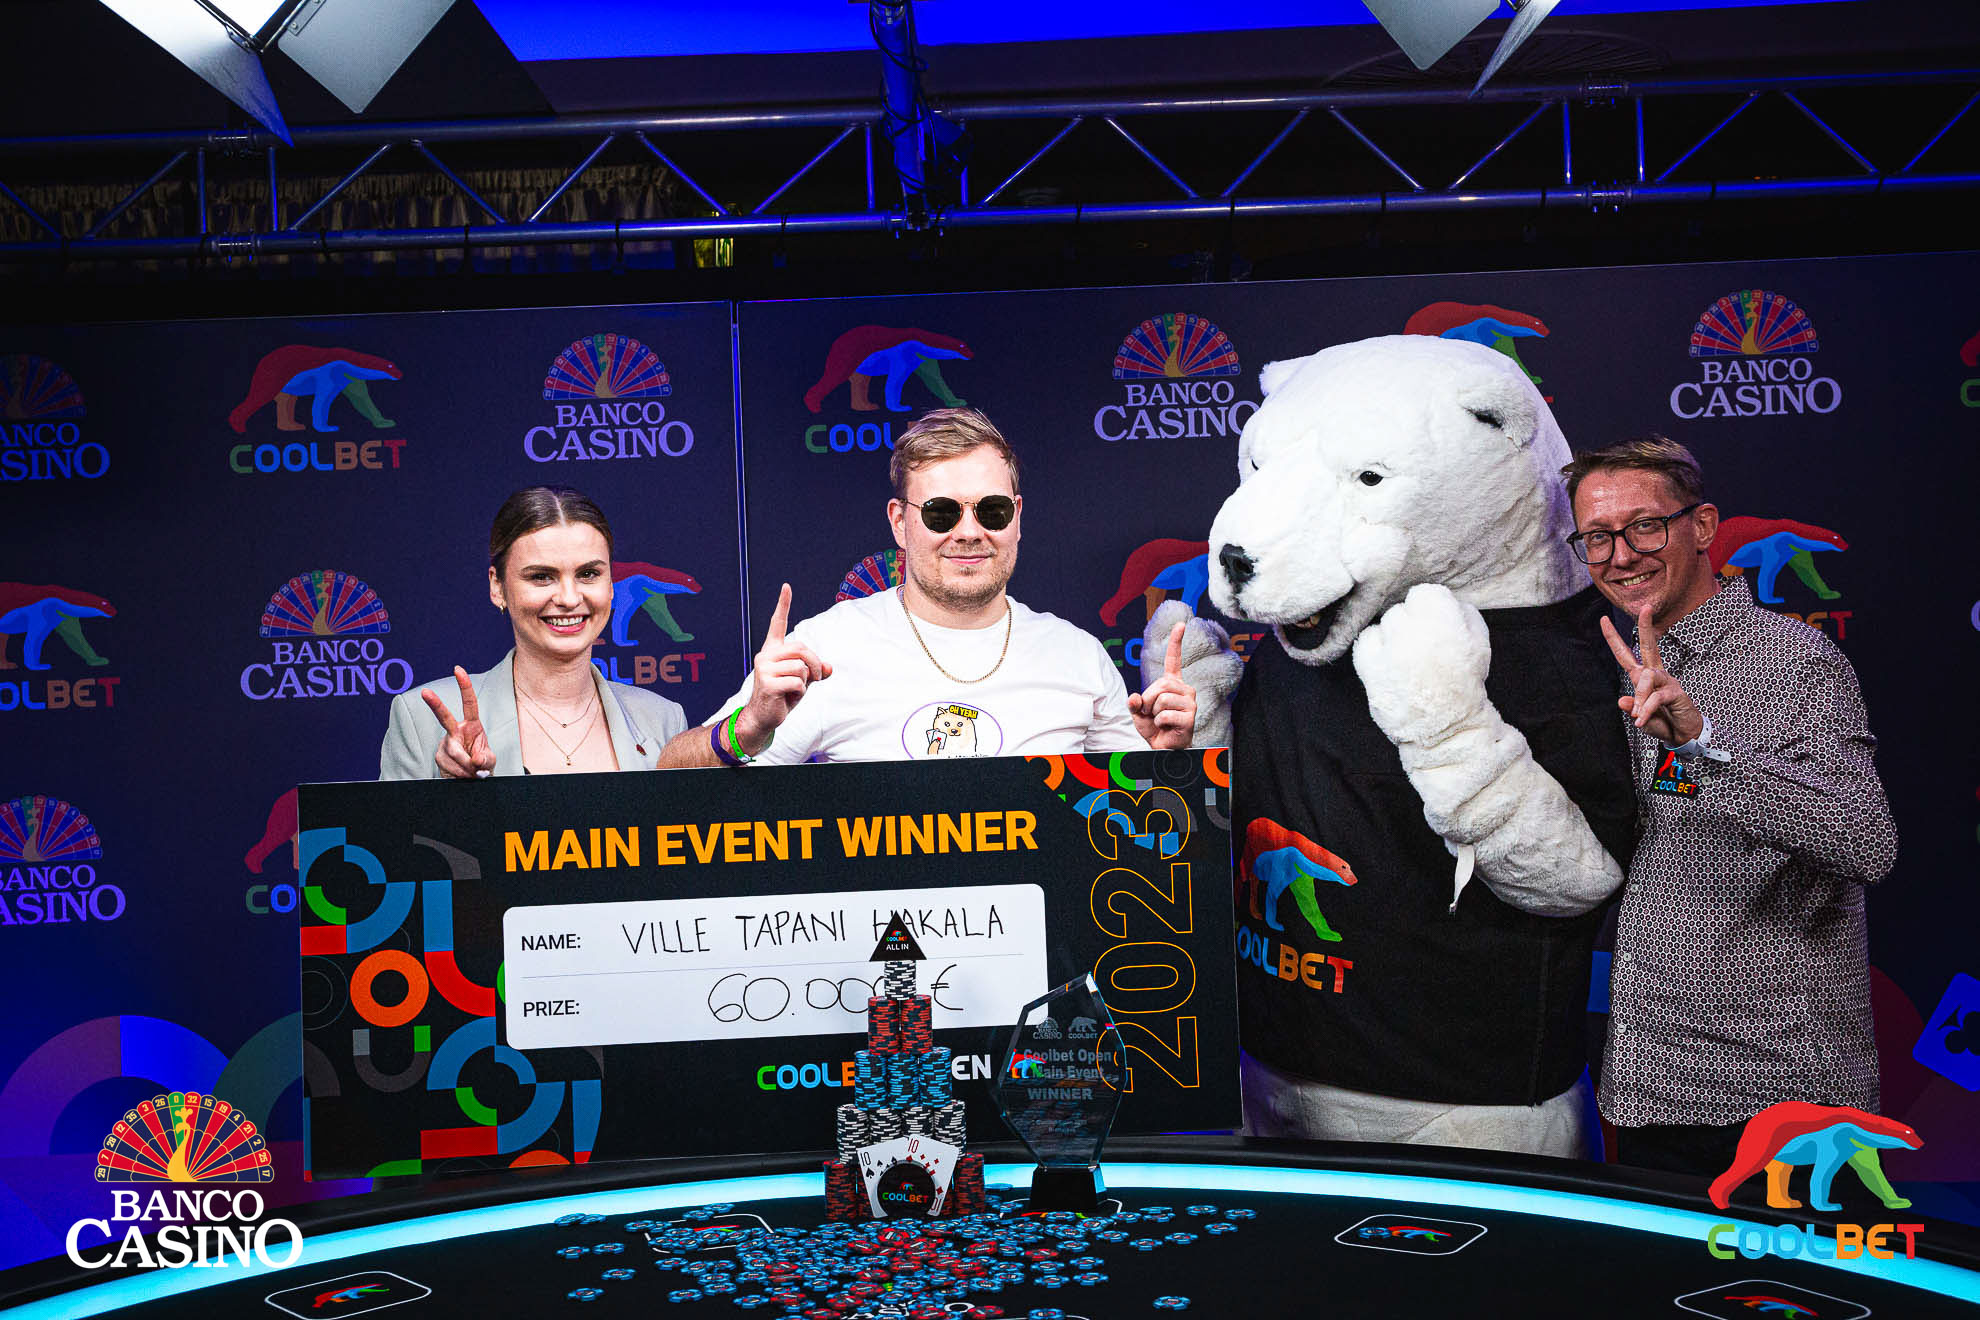 Trofej šampióna Coolbet Open v Banco Casino a odmena 60.000€ smeruje do Fínska!